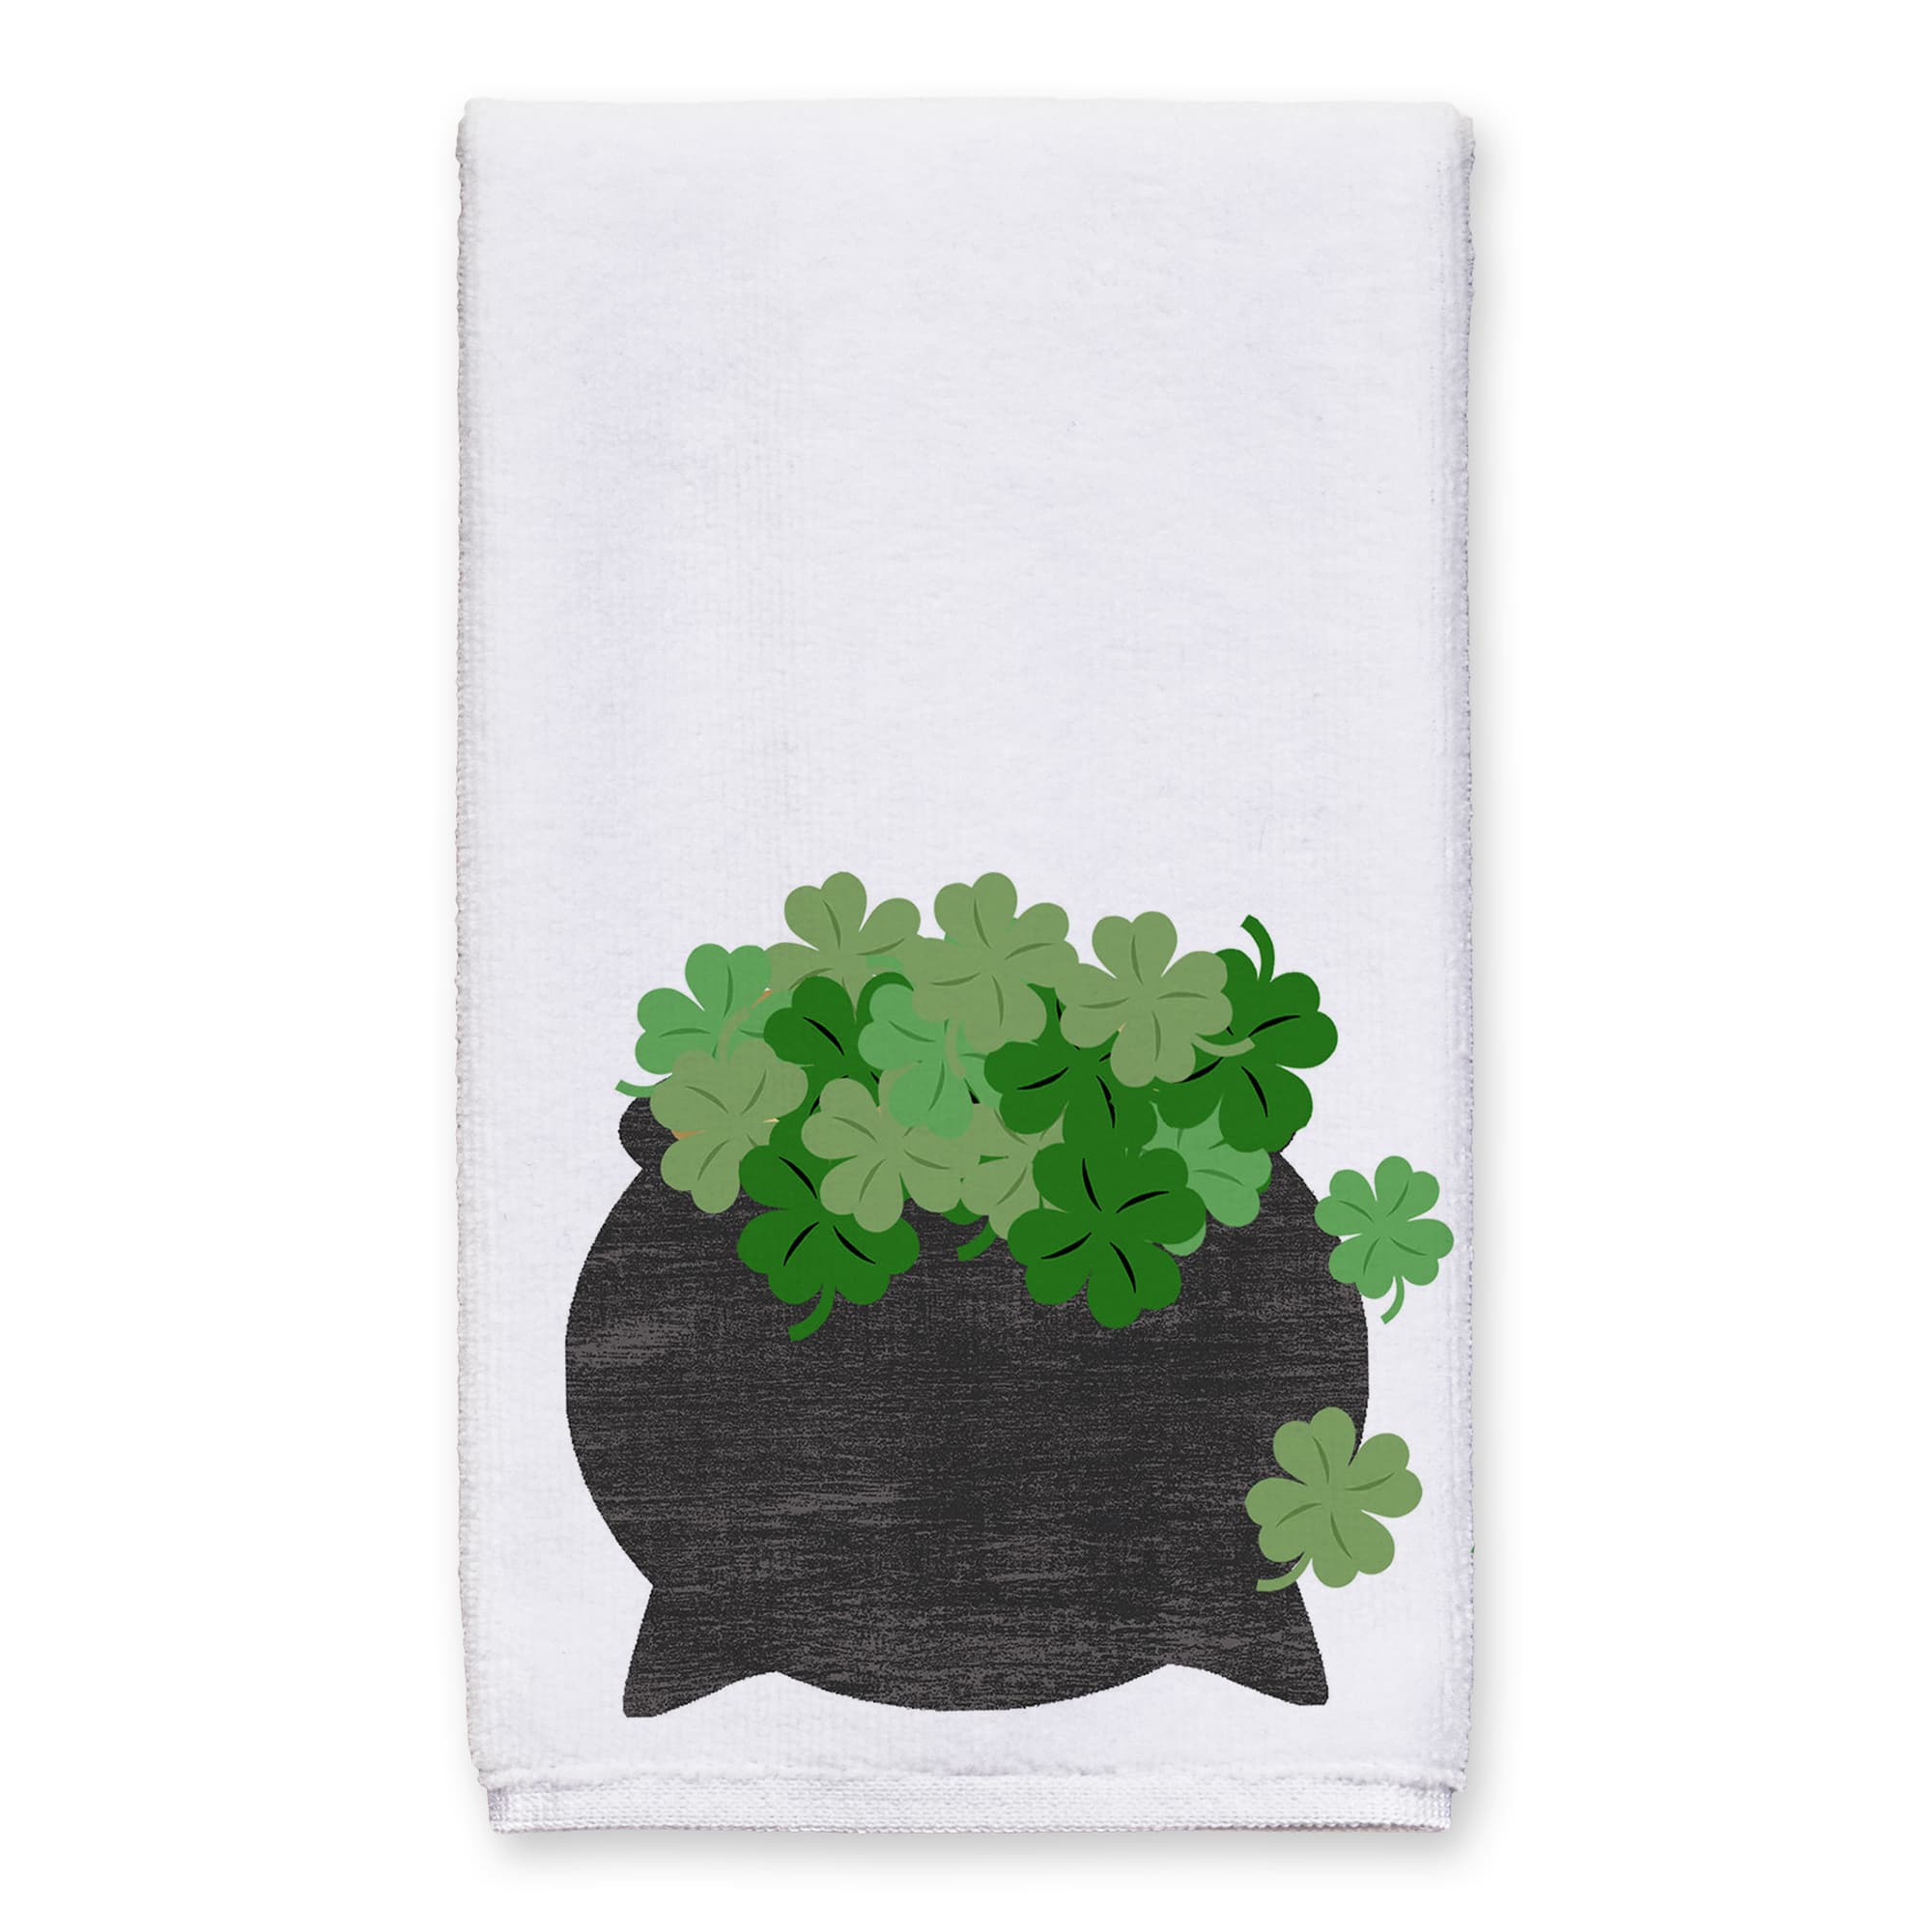 Simple Irish Tea Towel Set of 2